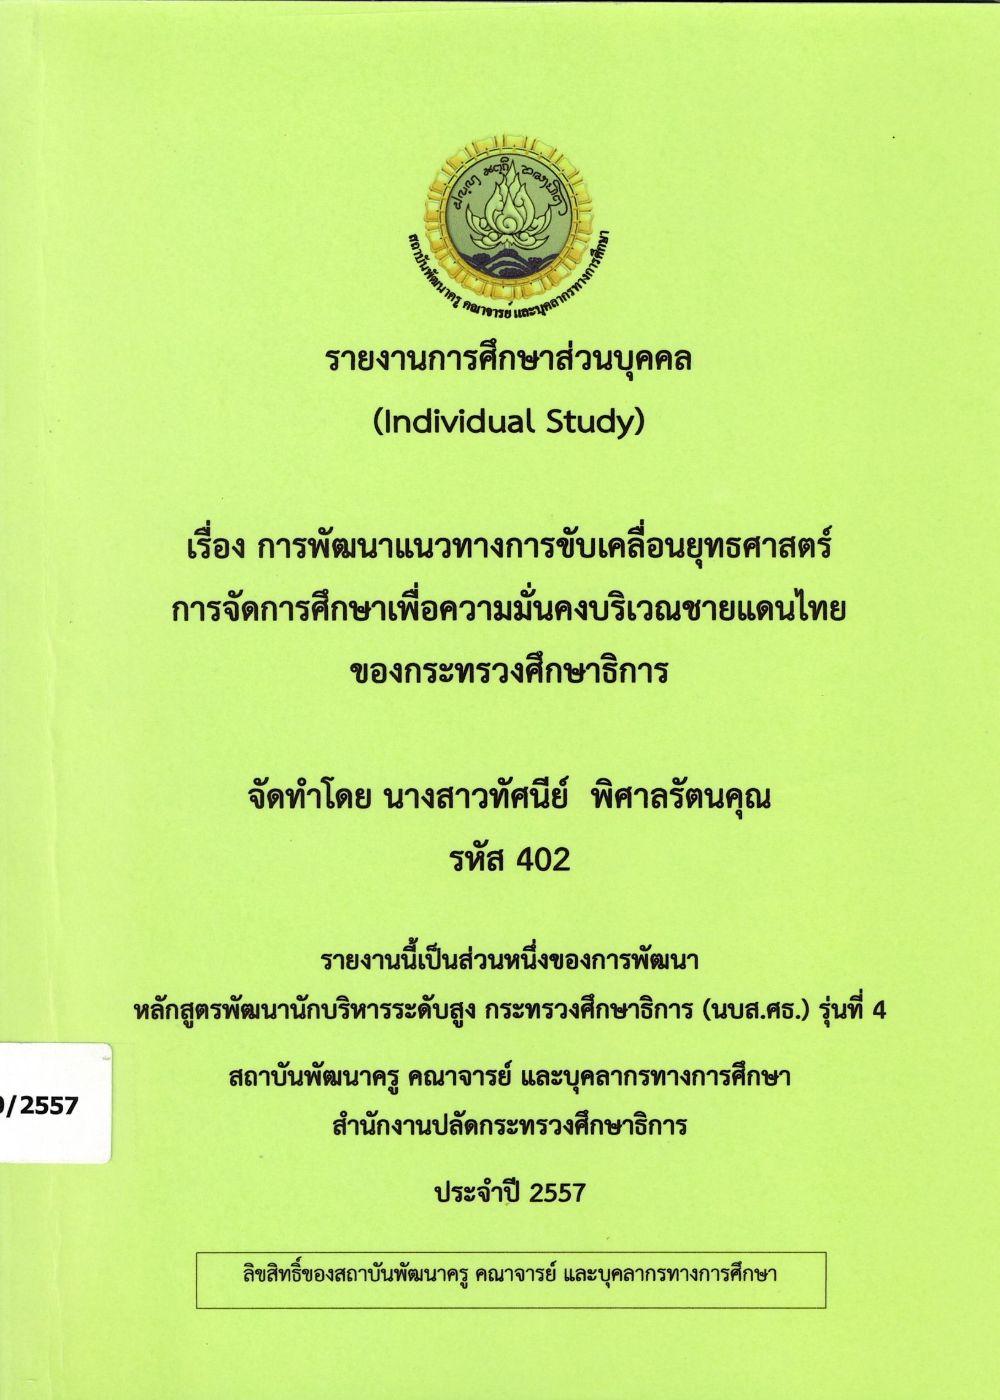 การพัฒนาแนวทางการขับเคลื่อนยุทธศาสตร์ การจัดการศึกษาเพื่อความมั่นคงบริเวณชายแดนไทยของกระทรวงศึกษาธิการ : รายงานการศึกษาส่วนบุคคล (Individual Study)/ ทัศนีย์ พิศาลรัตนคุณ